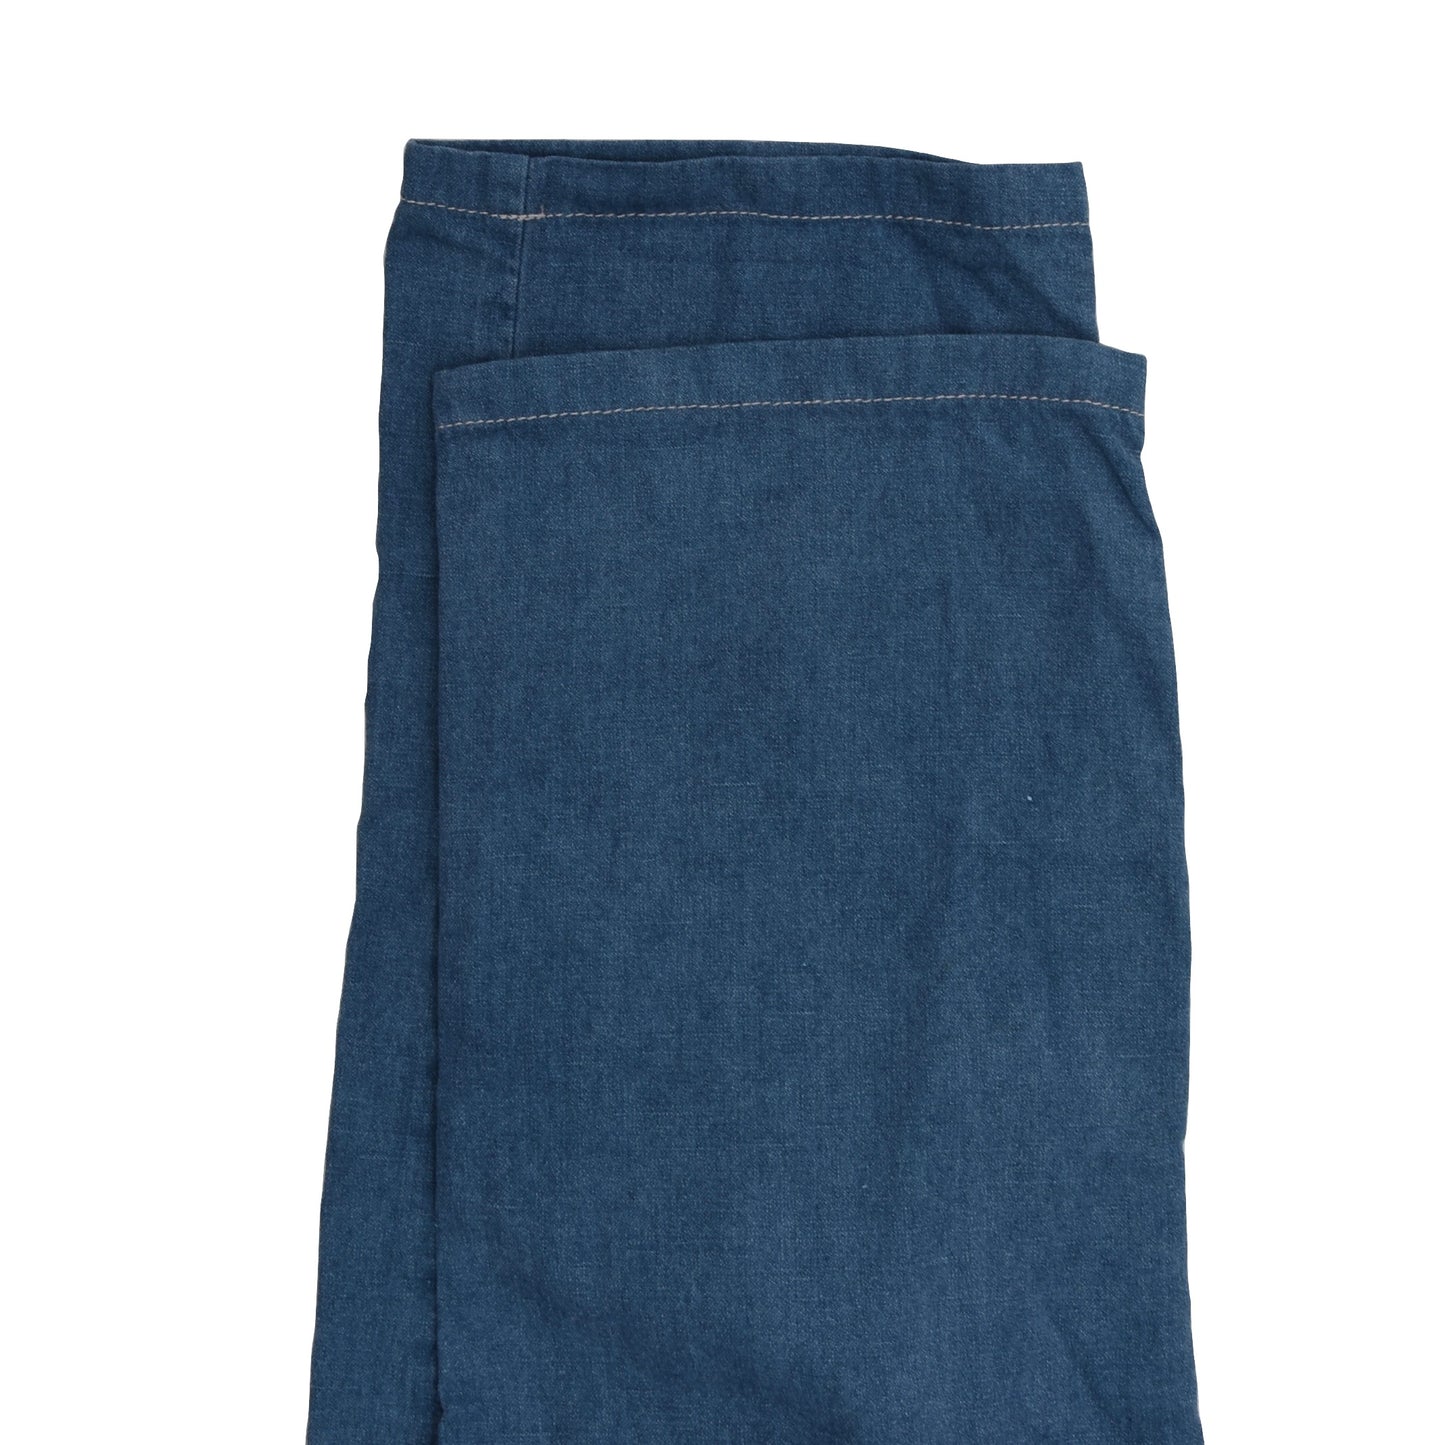 Incotex Cotton/Linen Pants Size 36 Slim Fit - Blue